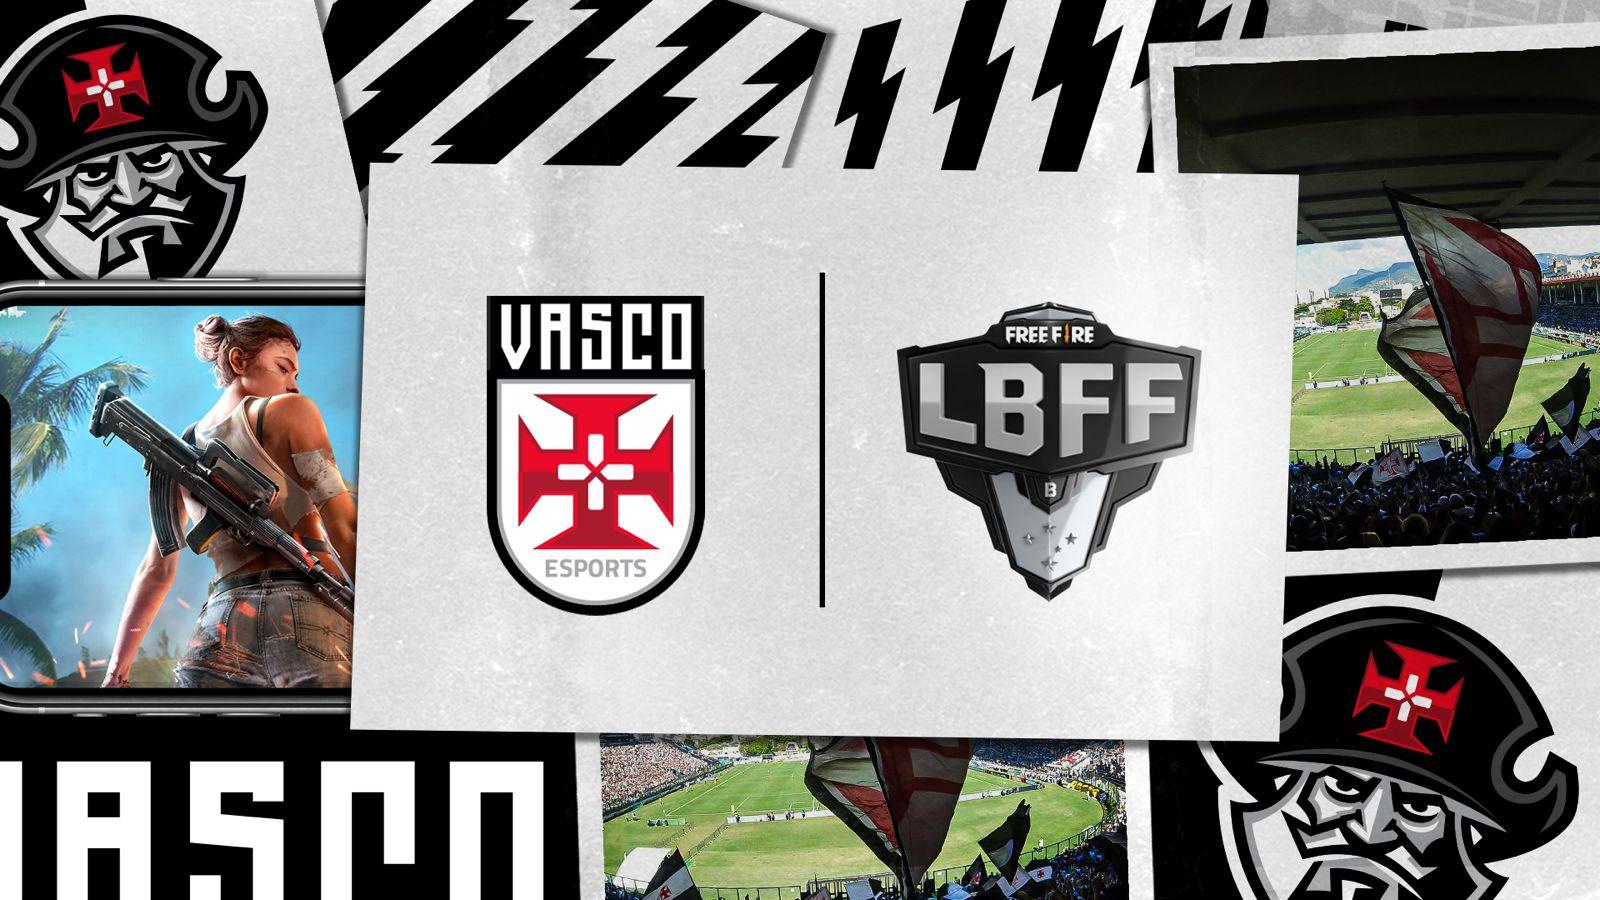 LBFF Série B 2021: Vasco, Imortal Force e PaiN Gaming são os destaques do primeiro dia das semifinais